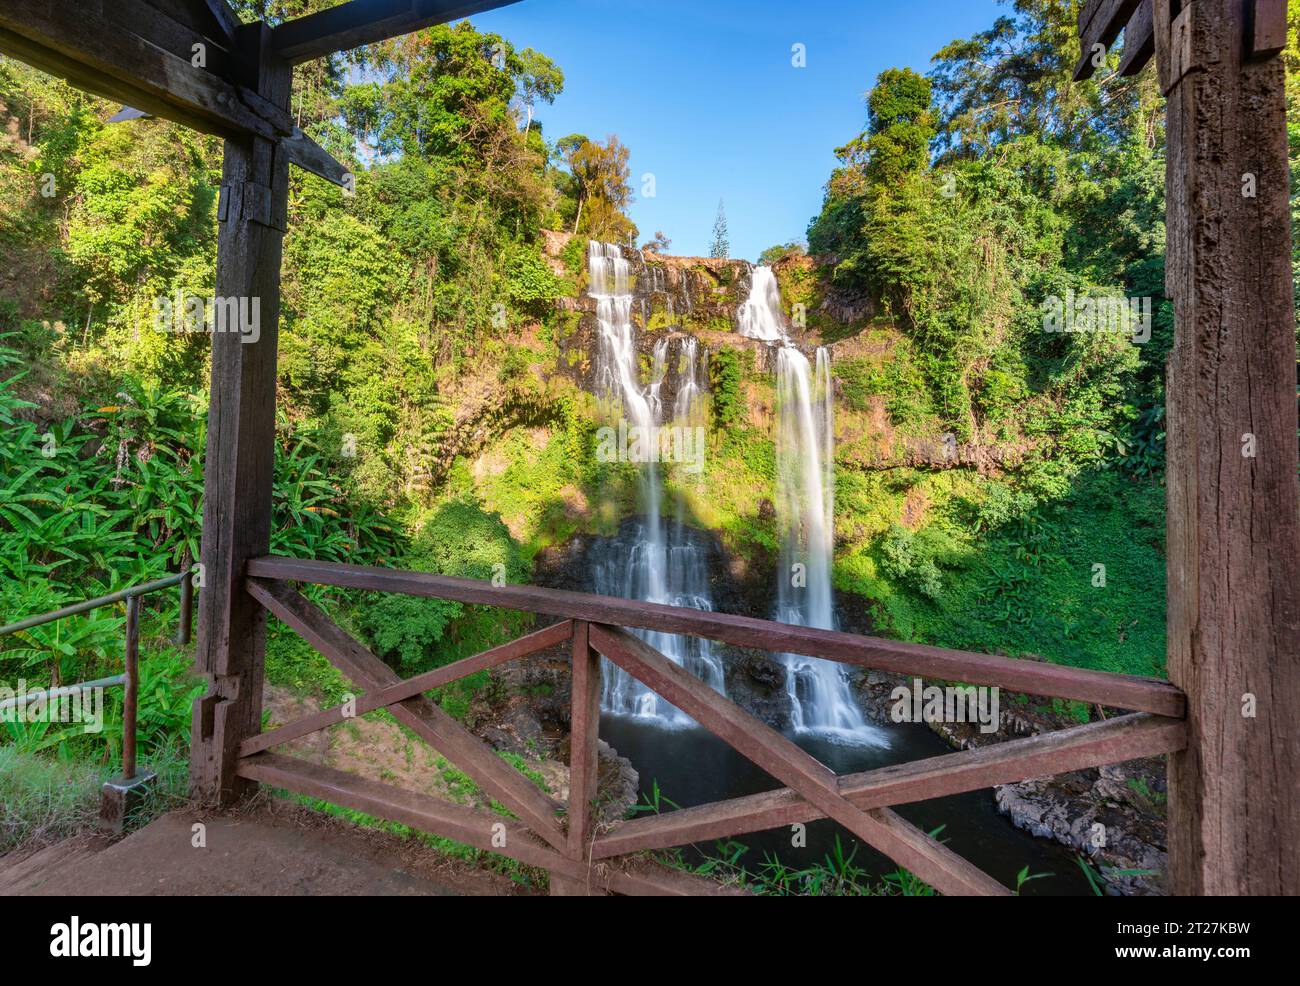 40 m di altezza, pittoresca cascata circondata da splendida foresta pluviale e natura, nell'area di Pakse del Laos meridionale, nel quartiere di Paksong. Foto Stock